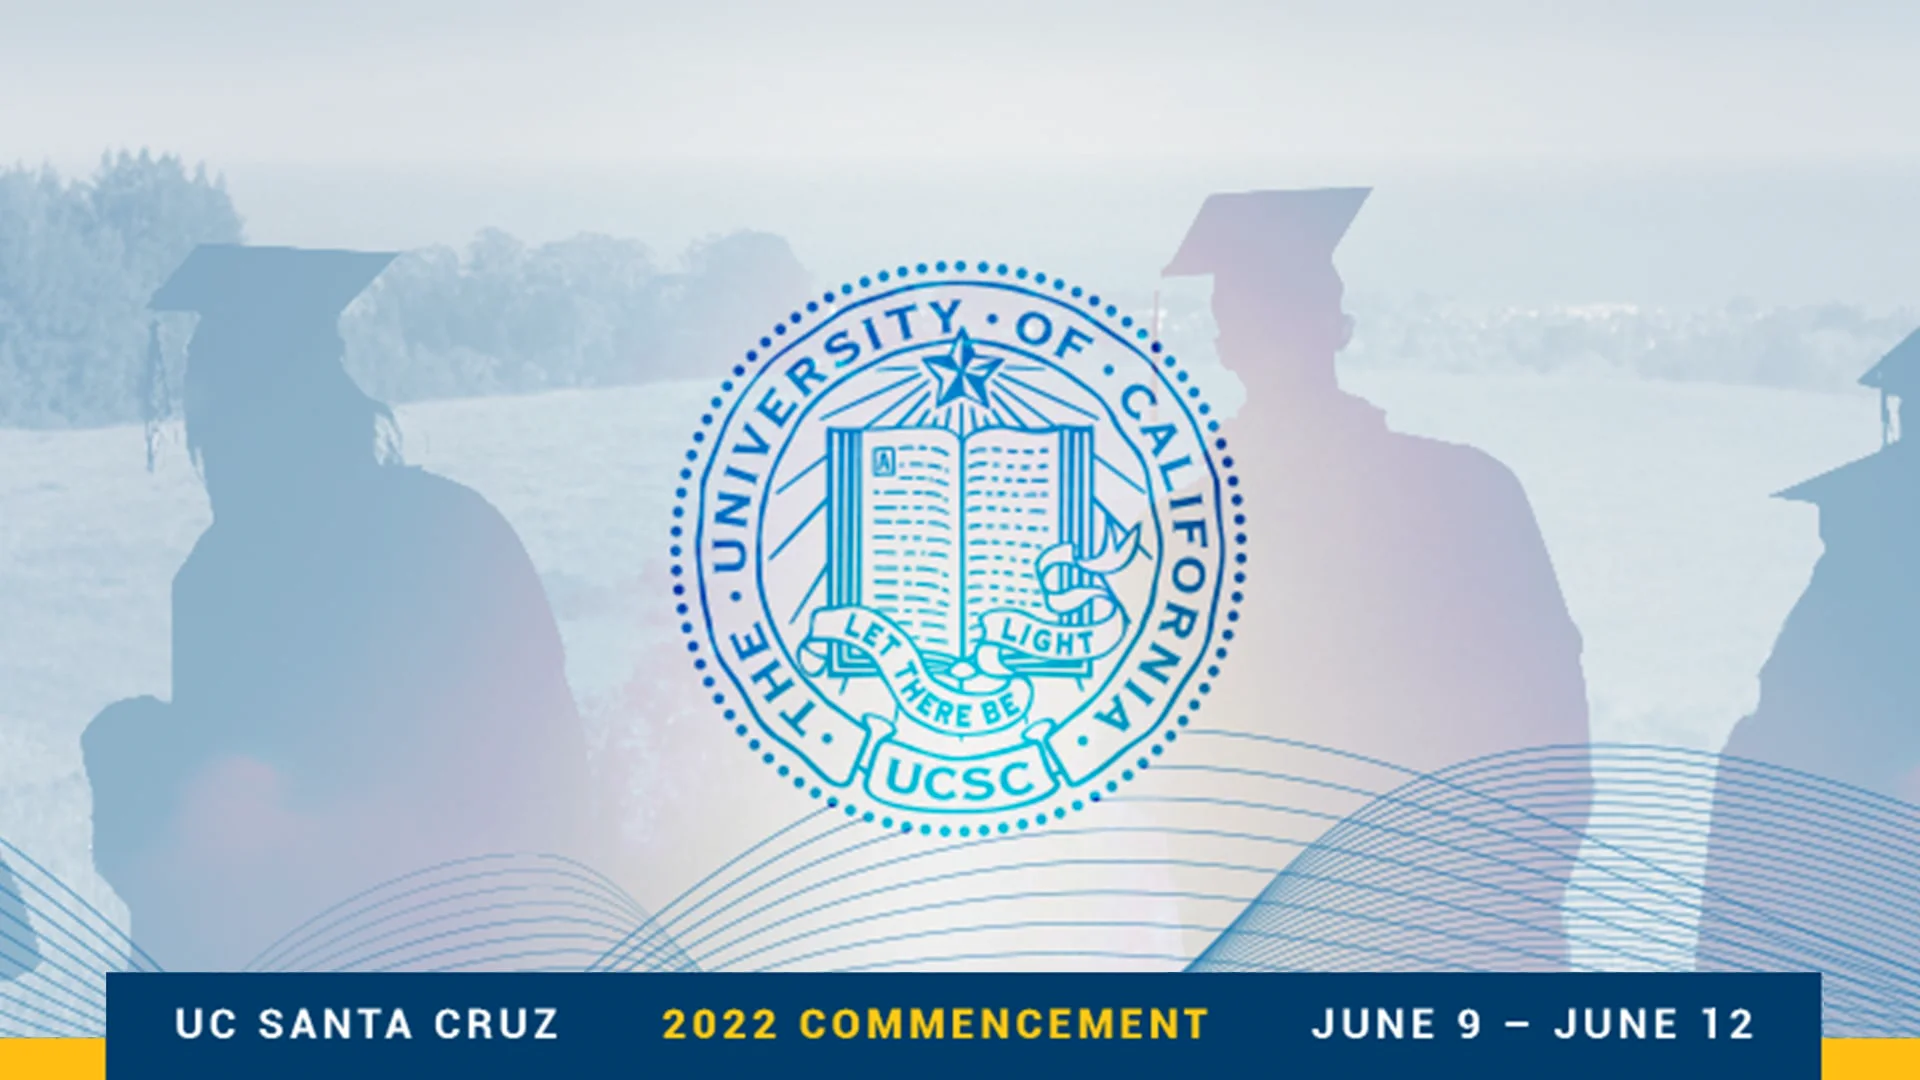 2022 UC Santa Cruz Commencement Program 2 by UCSC